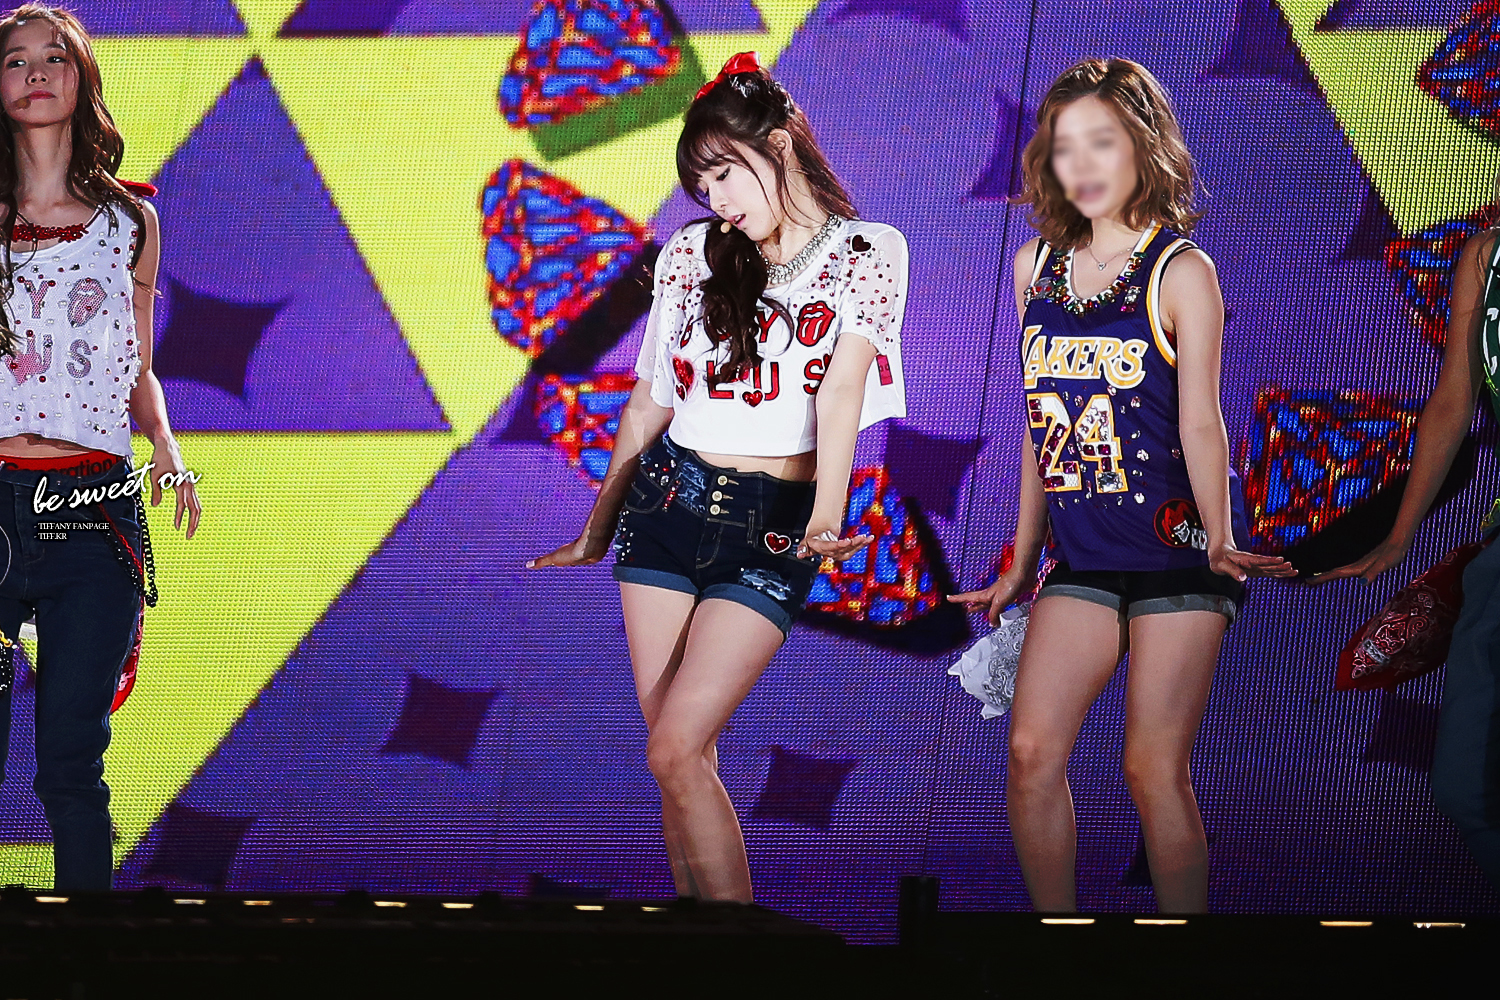 [PIC][01-09-2013]Hình ảnh mới nhất từ "Incheon Korean Music Wave 2013" của SNSD và MC YulTi vào tối nay 251954395225D342097D7A